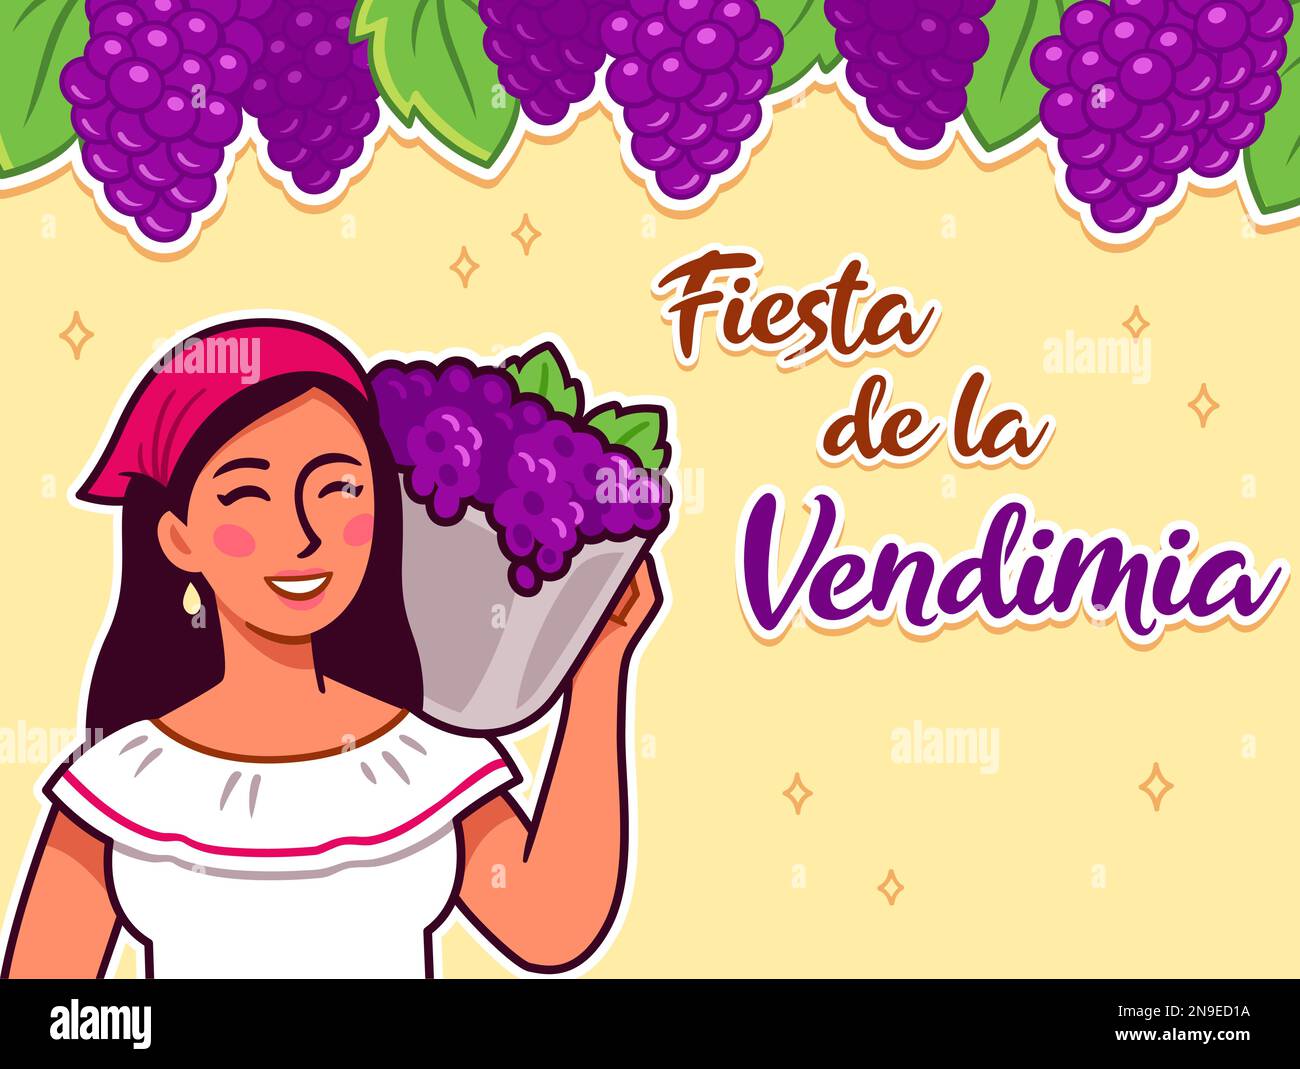 Fiesta de la Vendimia (festival de la récolte de raisin en espagnol). Jolie femme hispanique tenant un panier de raisins. Illustration de Vecteur